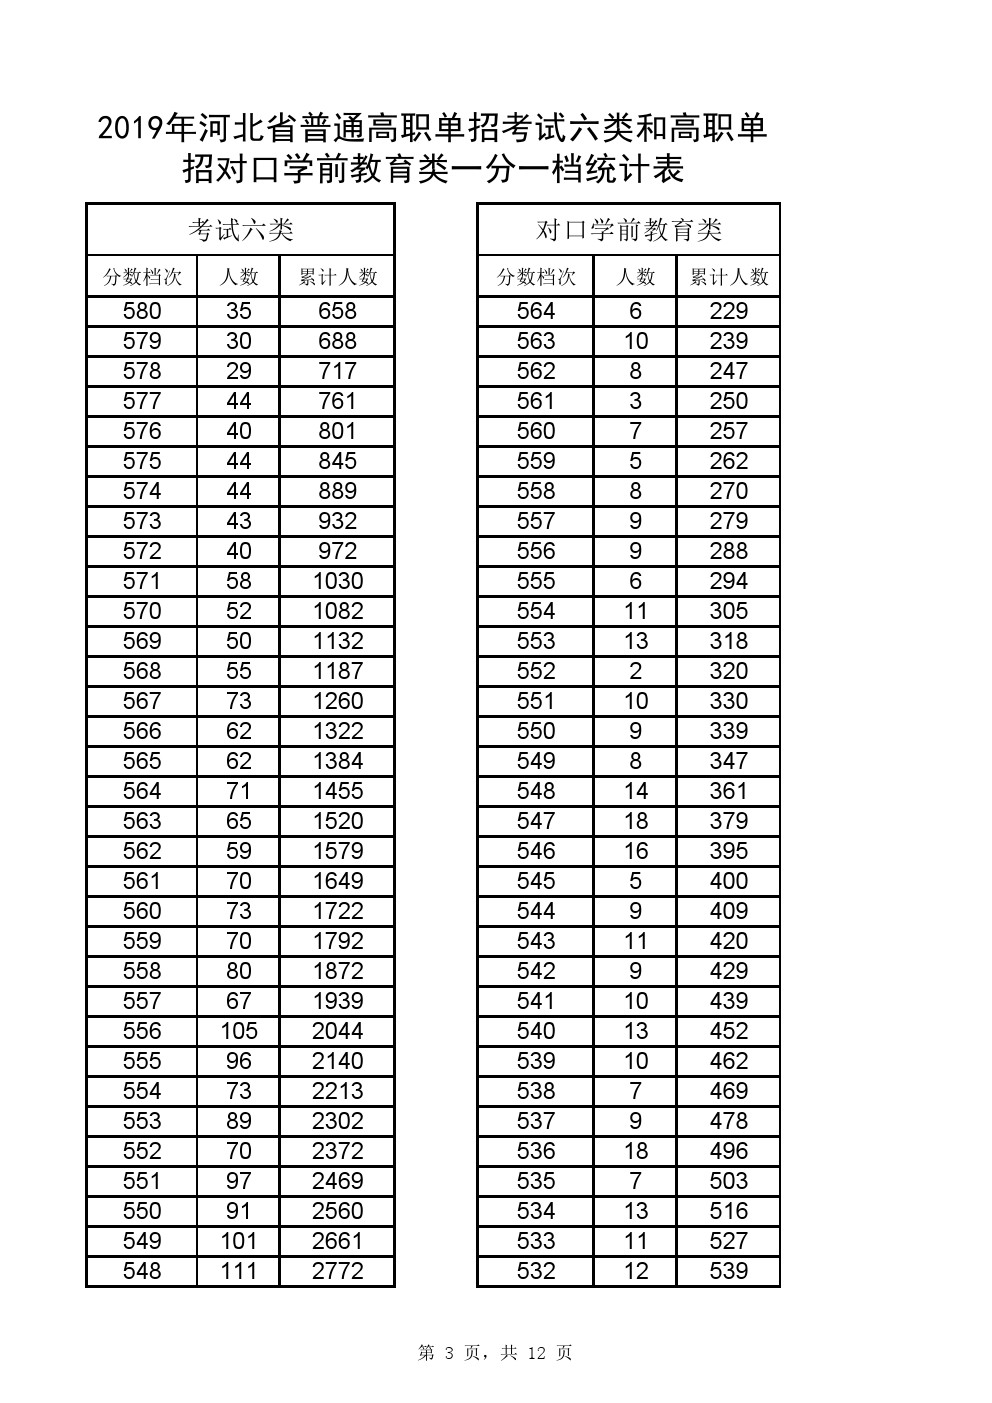 2019年河北省高职单招考试六类和对口学前教育类一分一档表 